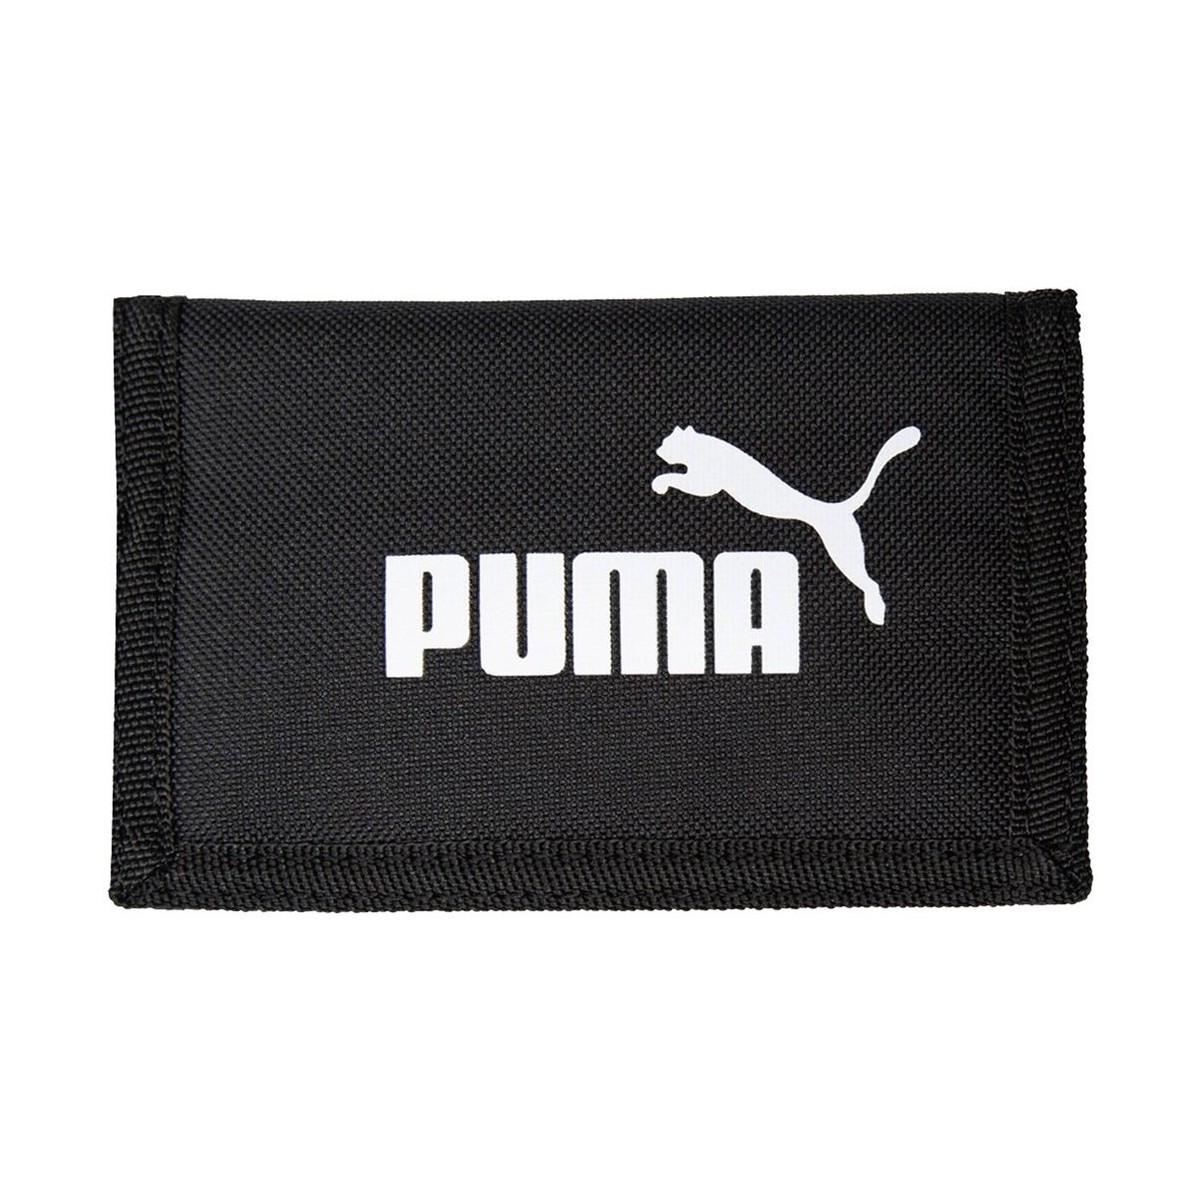 Taška Náprsní tašky Puma Phase Wallet Černá